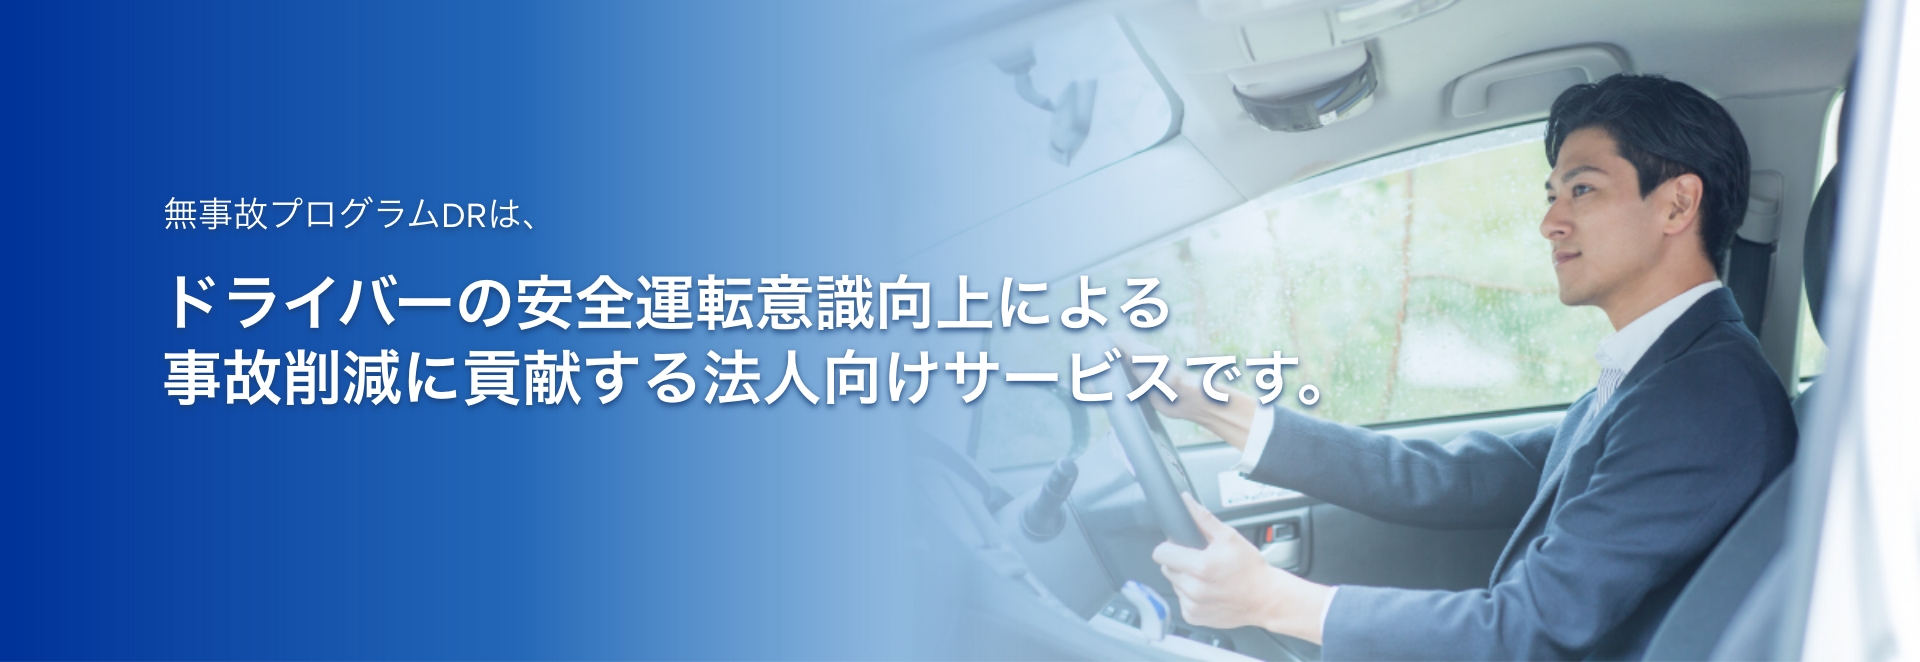 無事故プラグラムDRは、ドライバーの安全運転意識向上による事故削減に貢献する法人向けサービスです。